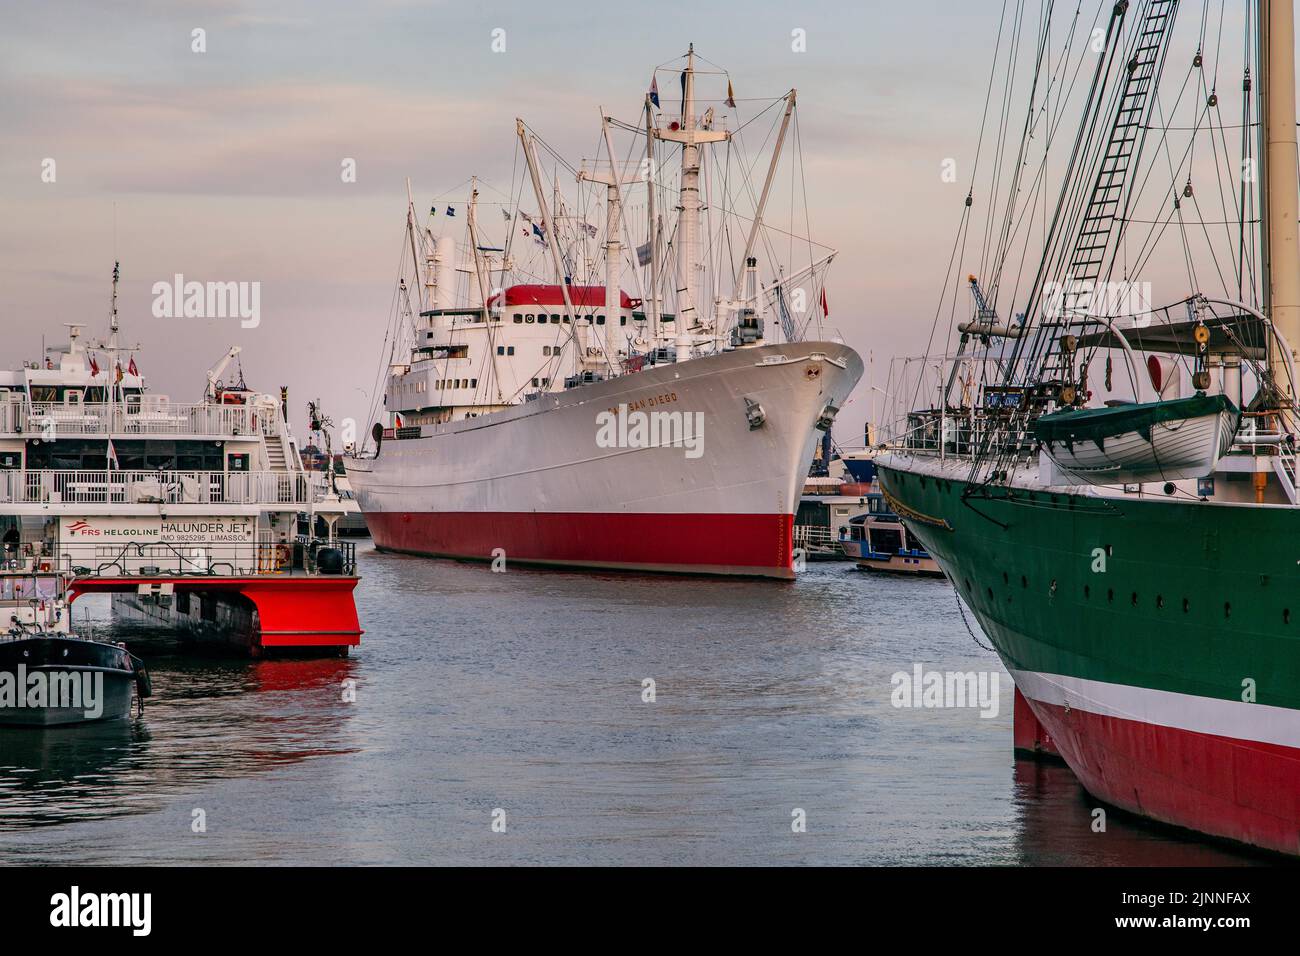 Navire-musée, cargo, navire-cargo général Cap San Diego sur l'Elbe dans le port de Hambourg, Hambourg, Land Hambourg, Allemagne du Nord, Allemagne, Europe Banque D'Images